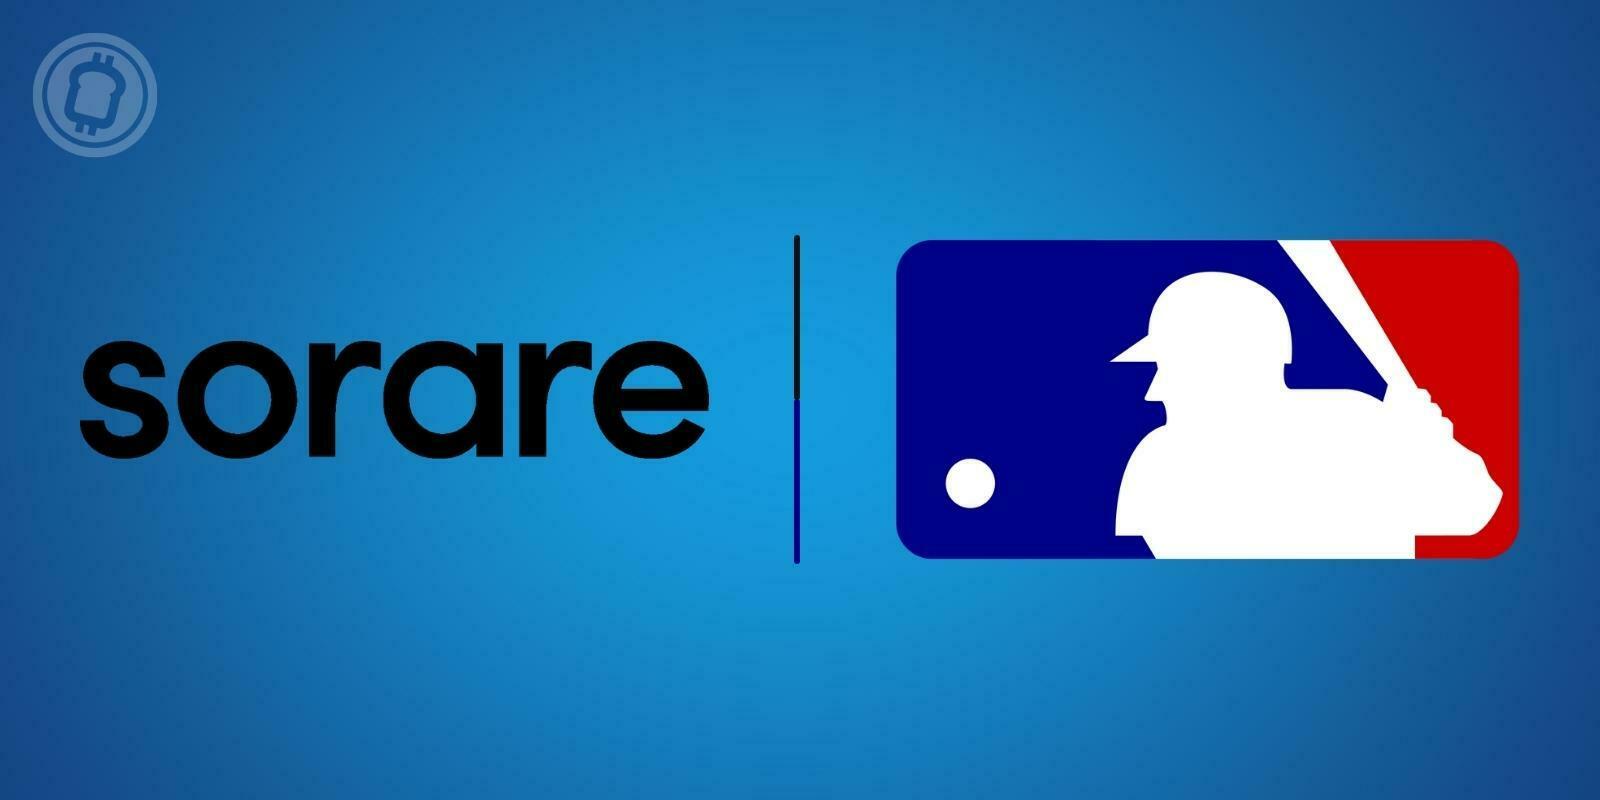 Sorare et la Major League Baseball (MLB) s’associent pour lancer un nouveau jeu blockchain